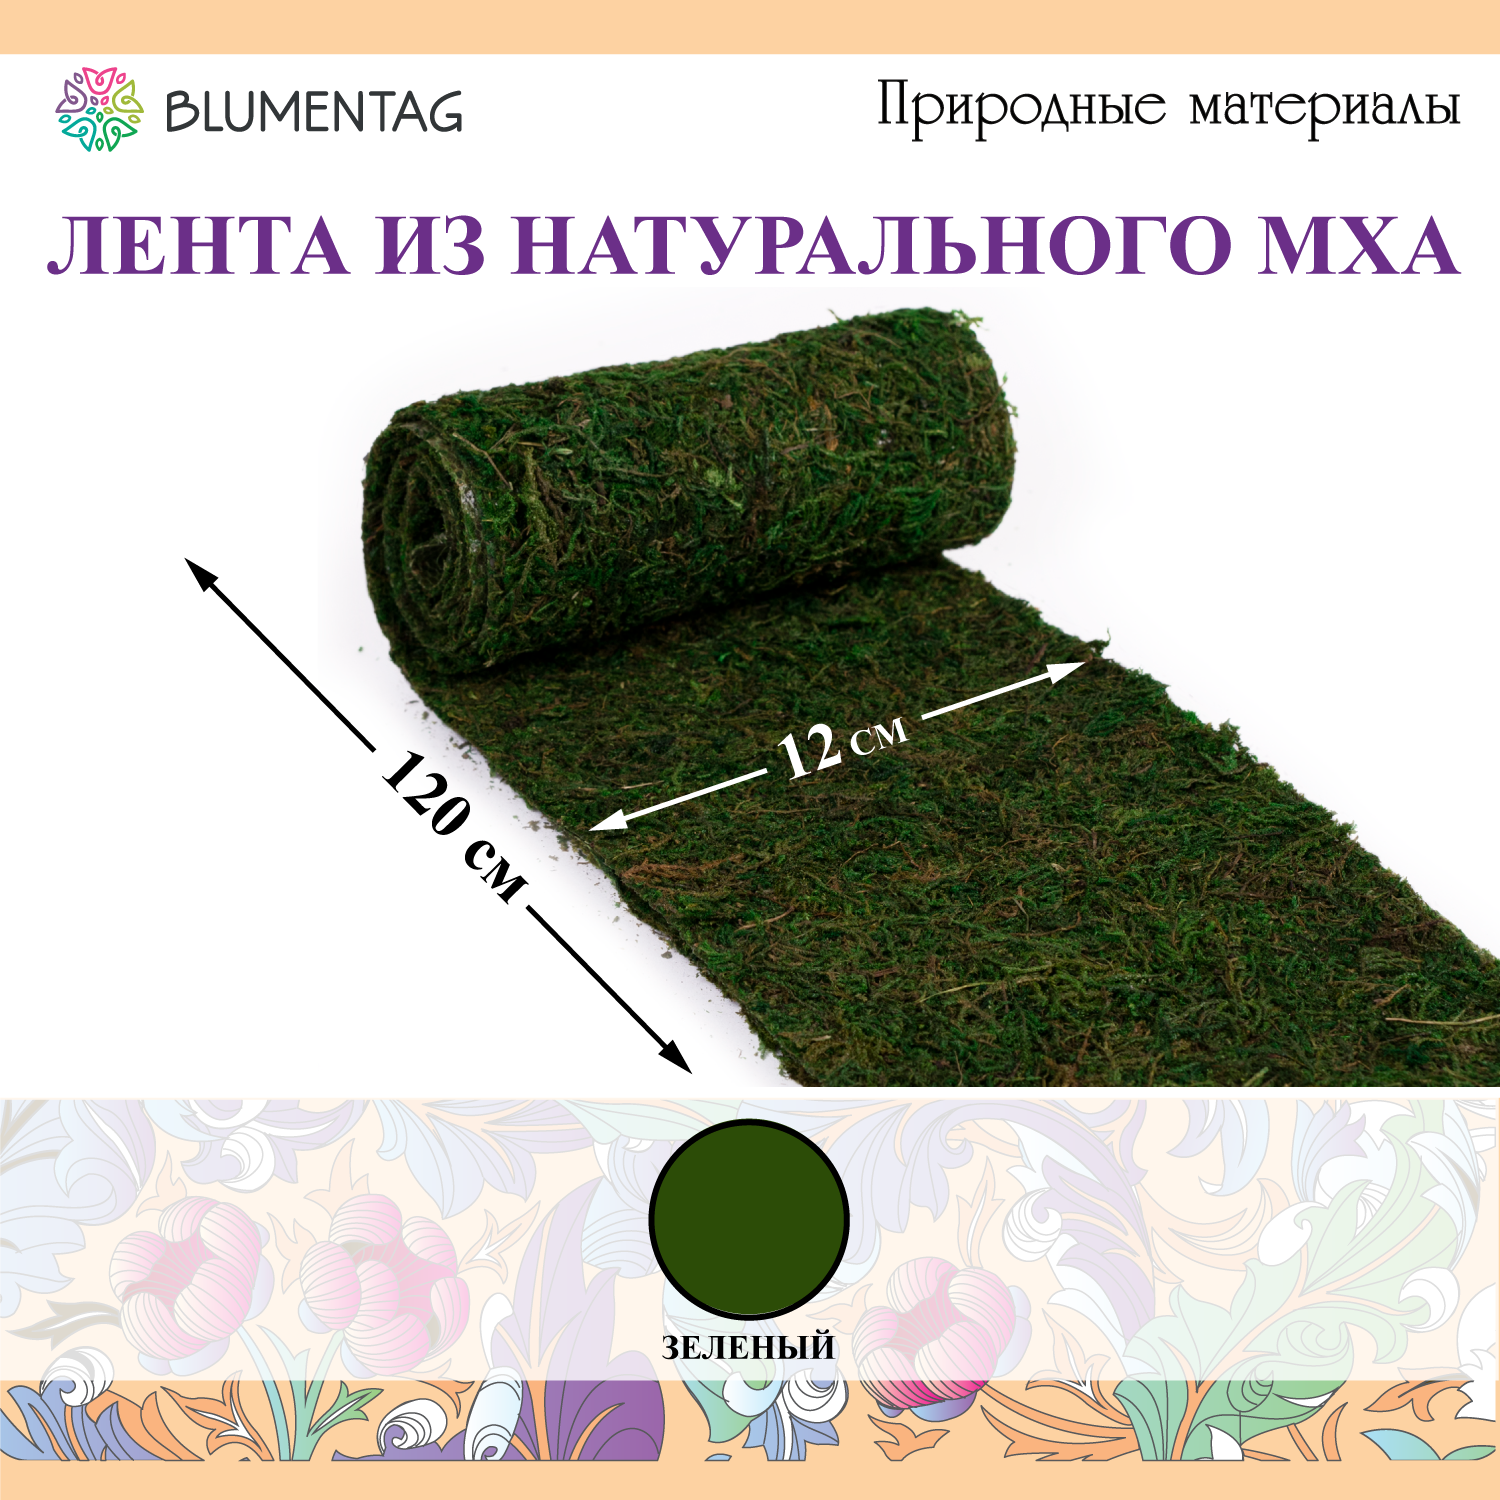 Флористика "Blumentag" BML-12 Лента из натурального мха 1.2 м зеленый